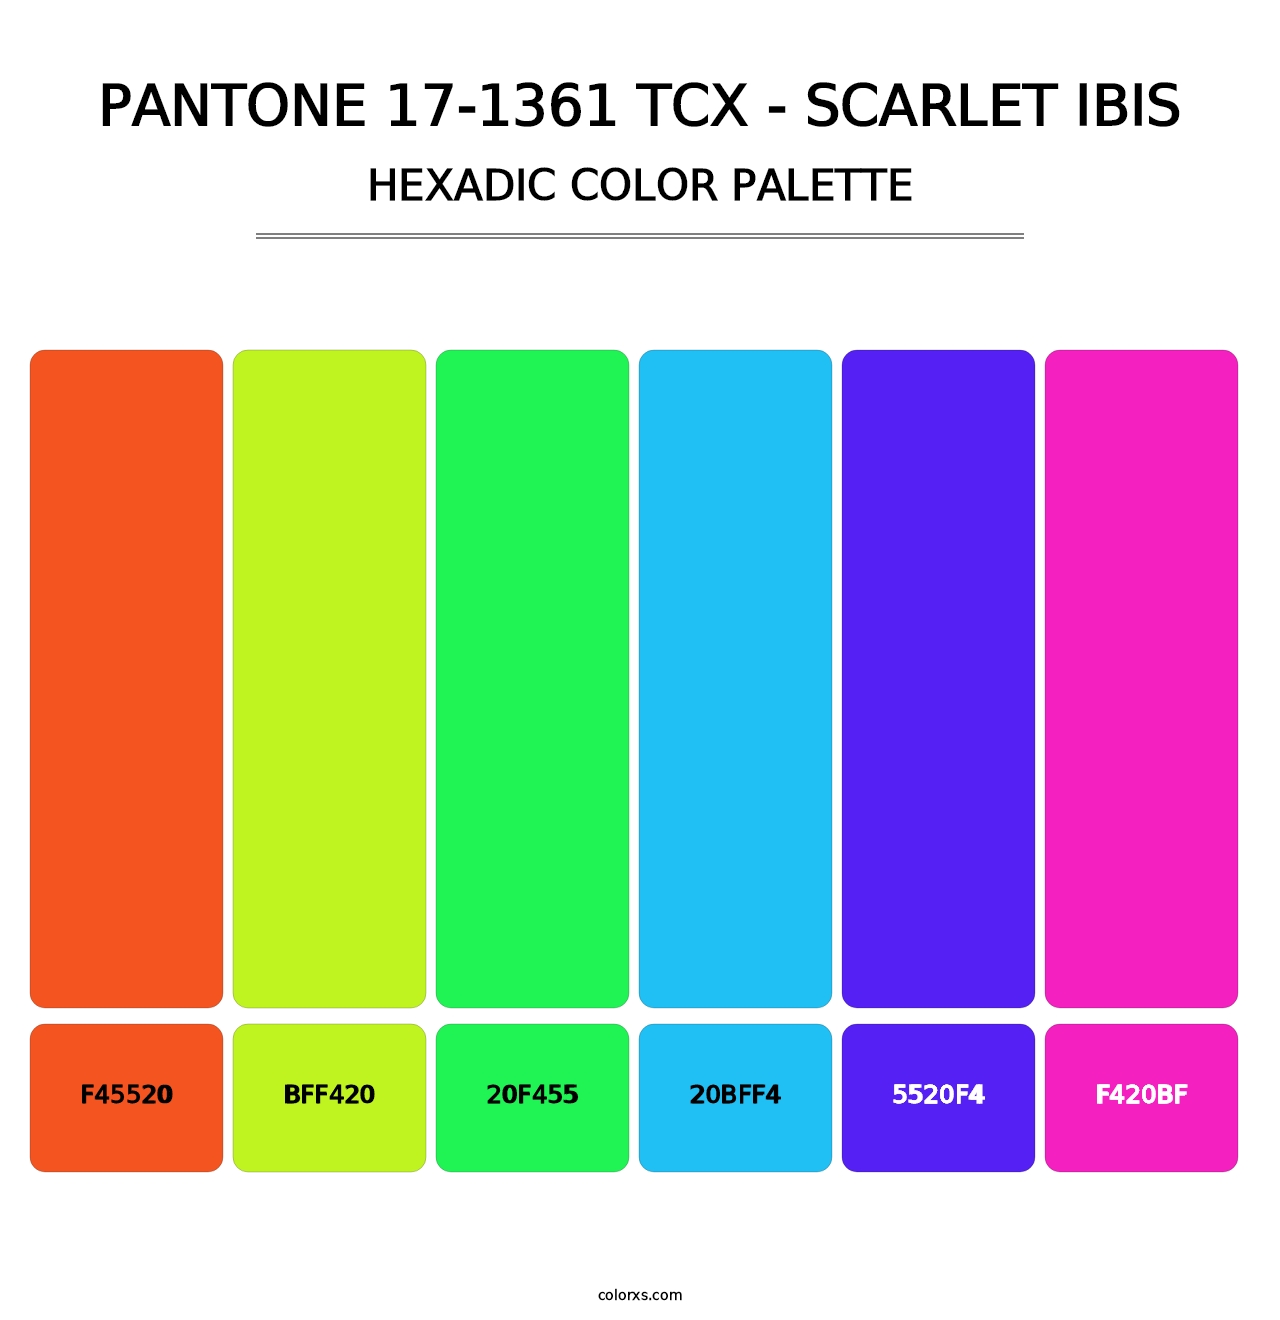 PANTONE 17-1361 TCX - Scarlet Ibis - Hexadic Color Palette